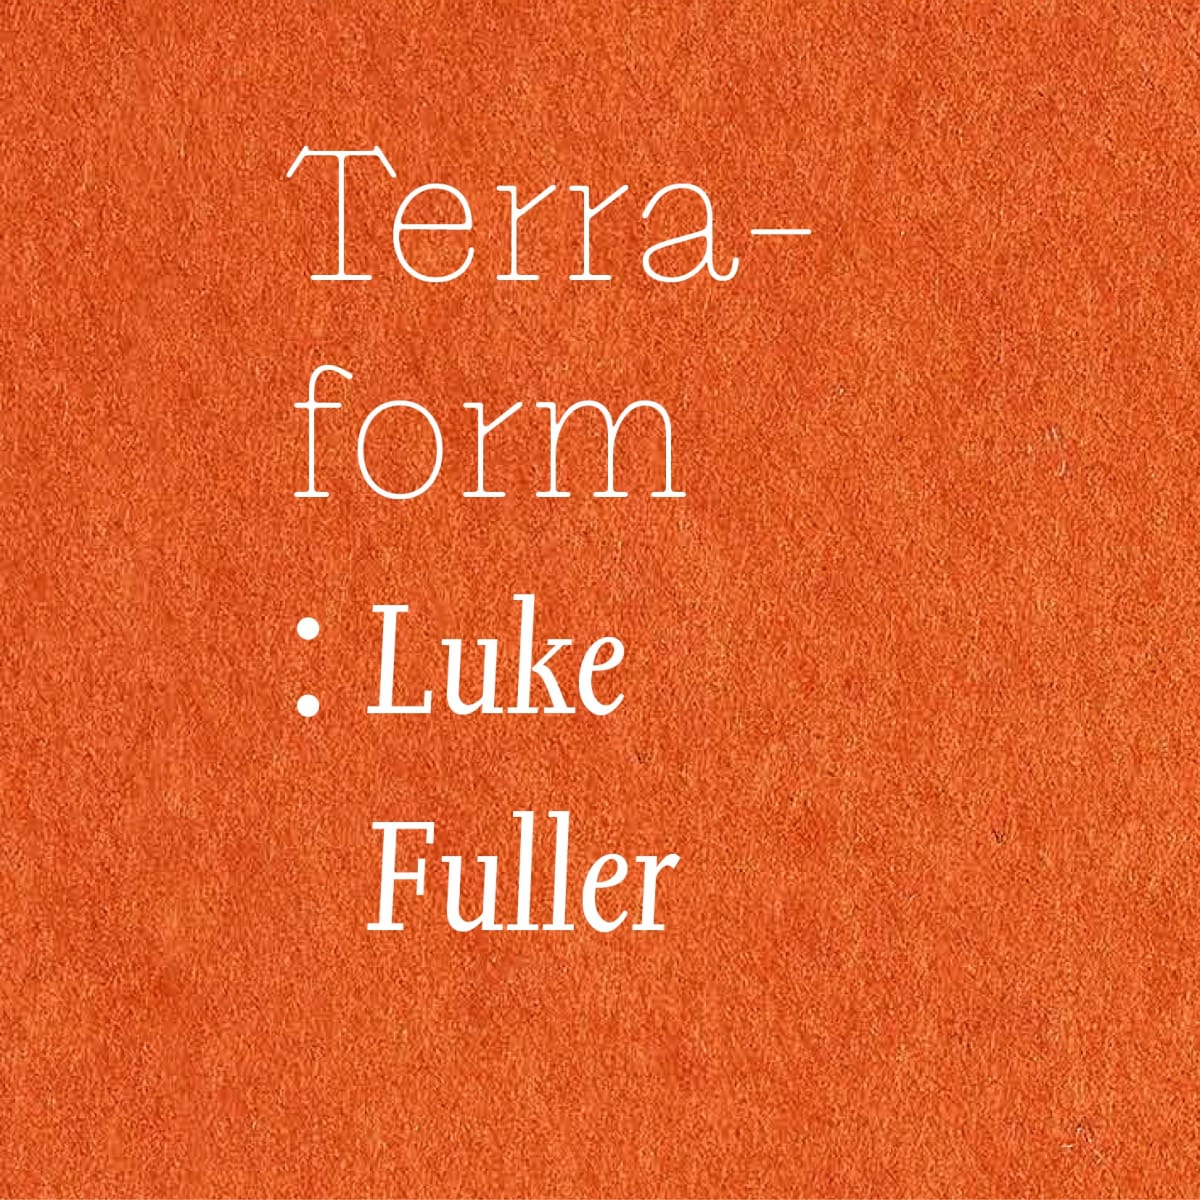 Terra - form : Luke Fuller